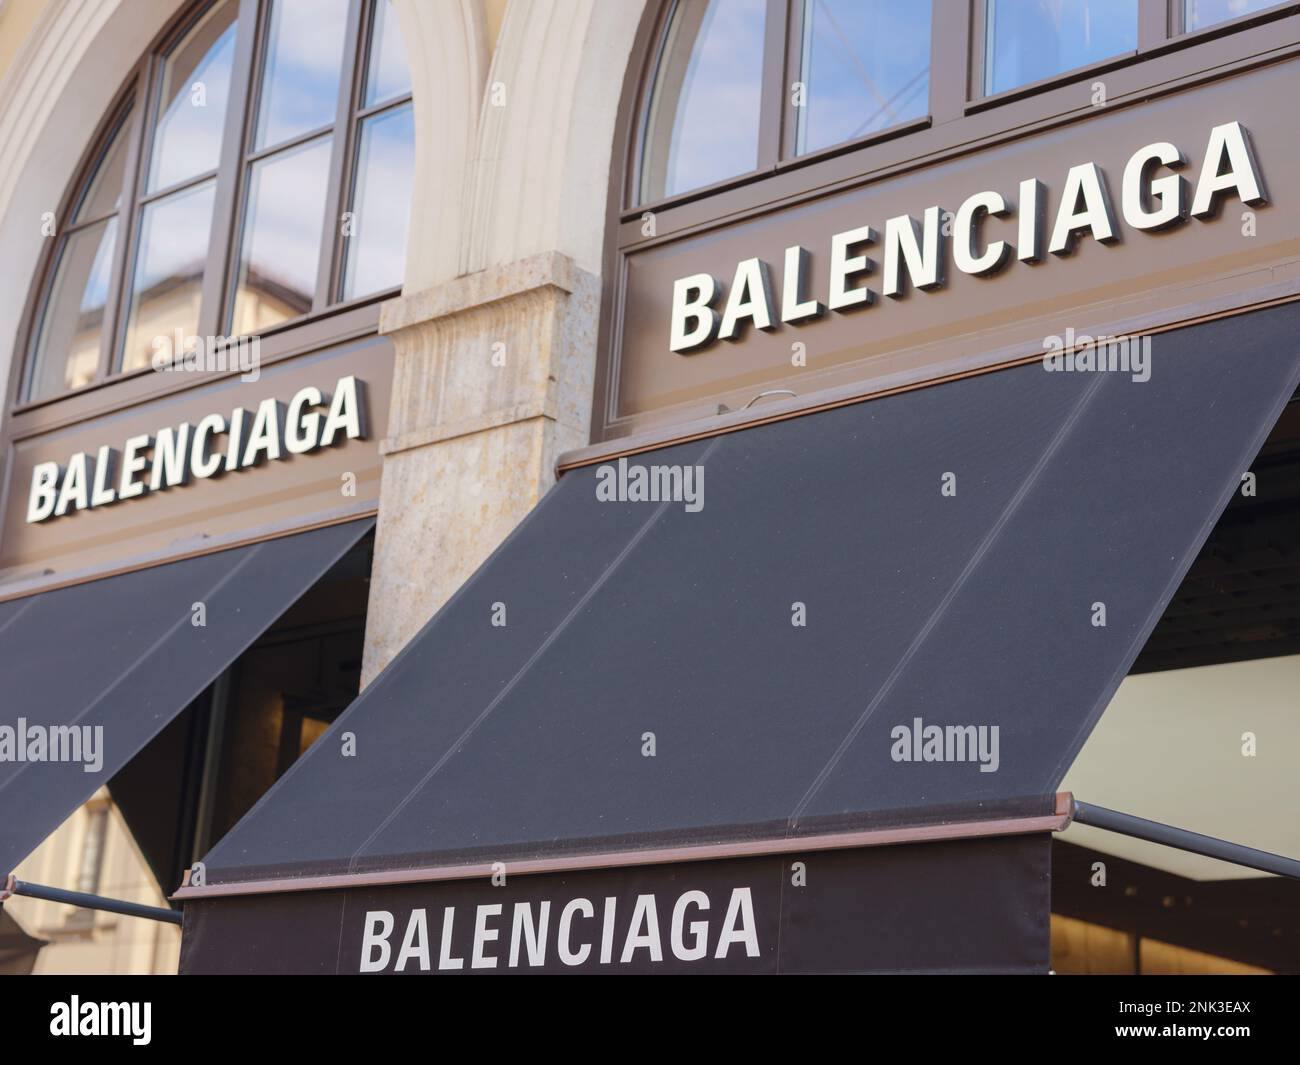 Munich, Alemania - 5 de agosto de 2022: Frente de la tienda Balenciaga.  Balenciaga es una casa europea de moda de lujo fundada por Cristóbal  Balenciaga Fotografía de stock - Alamy